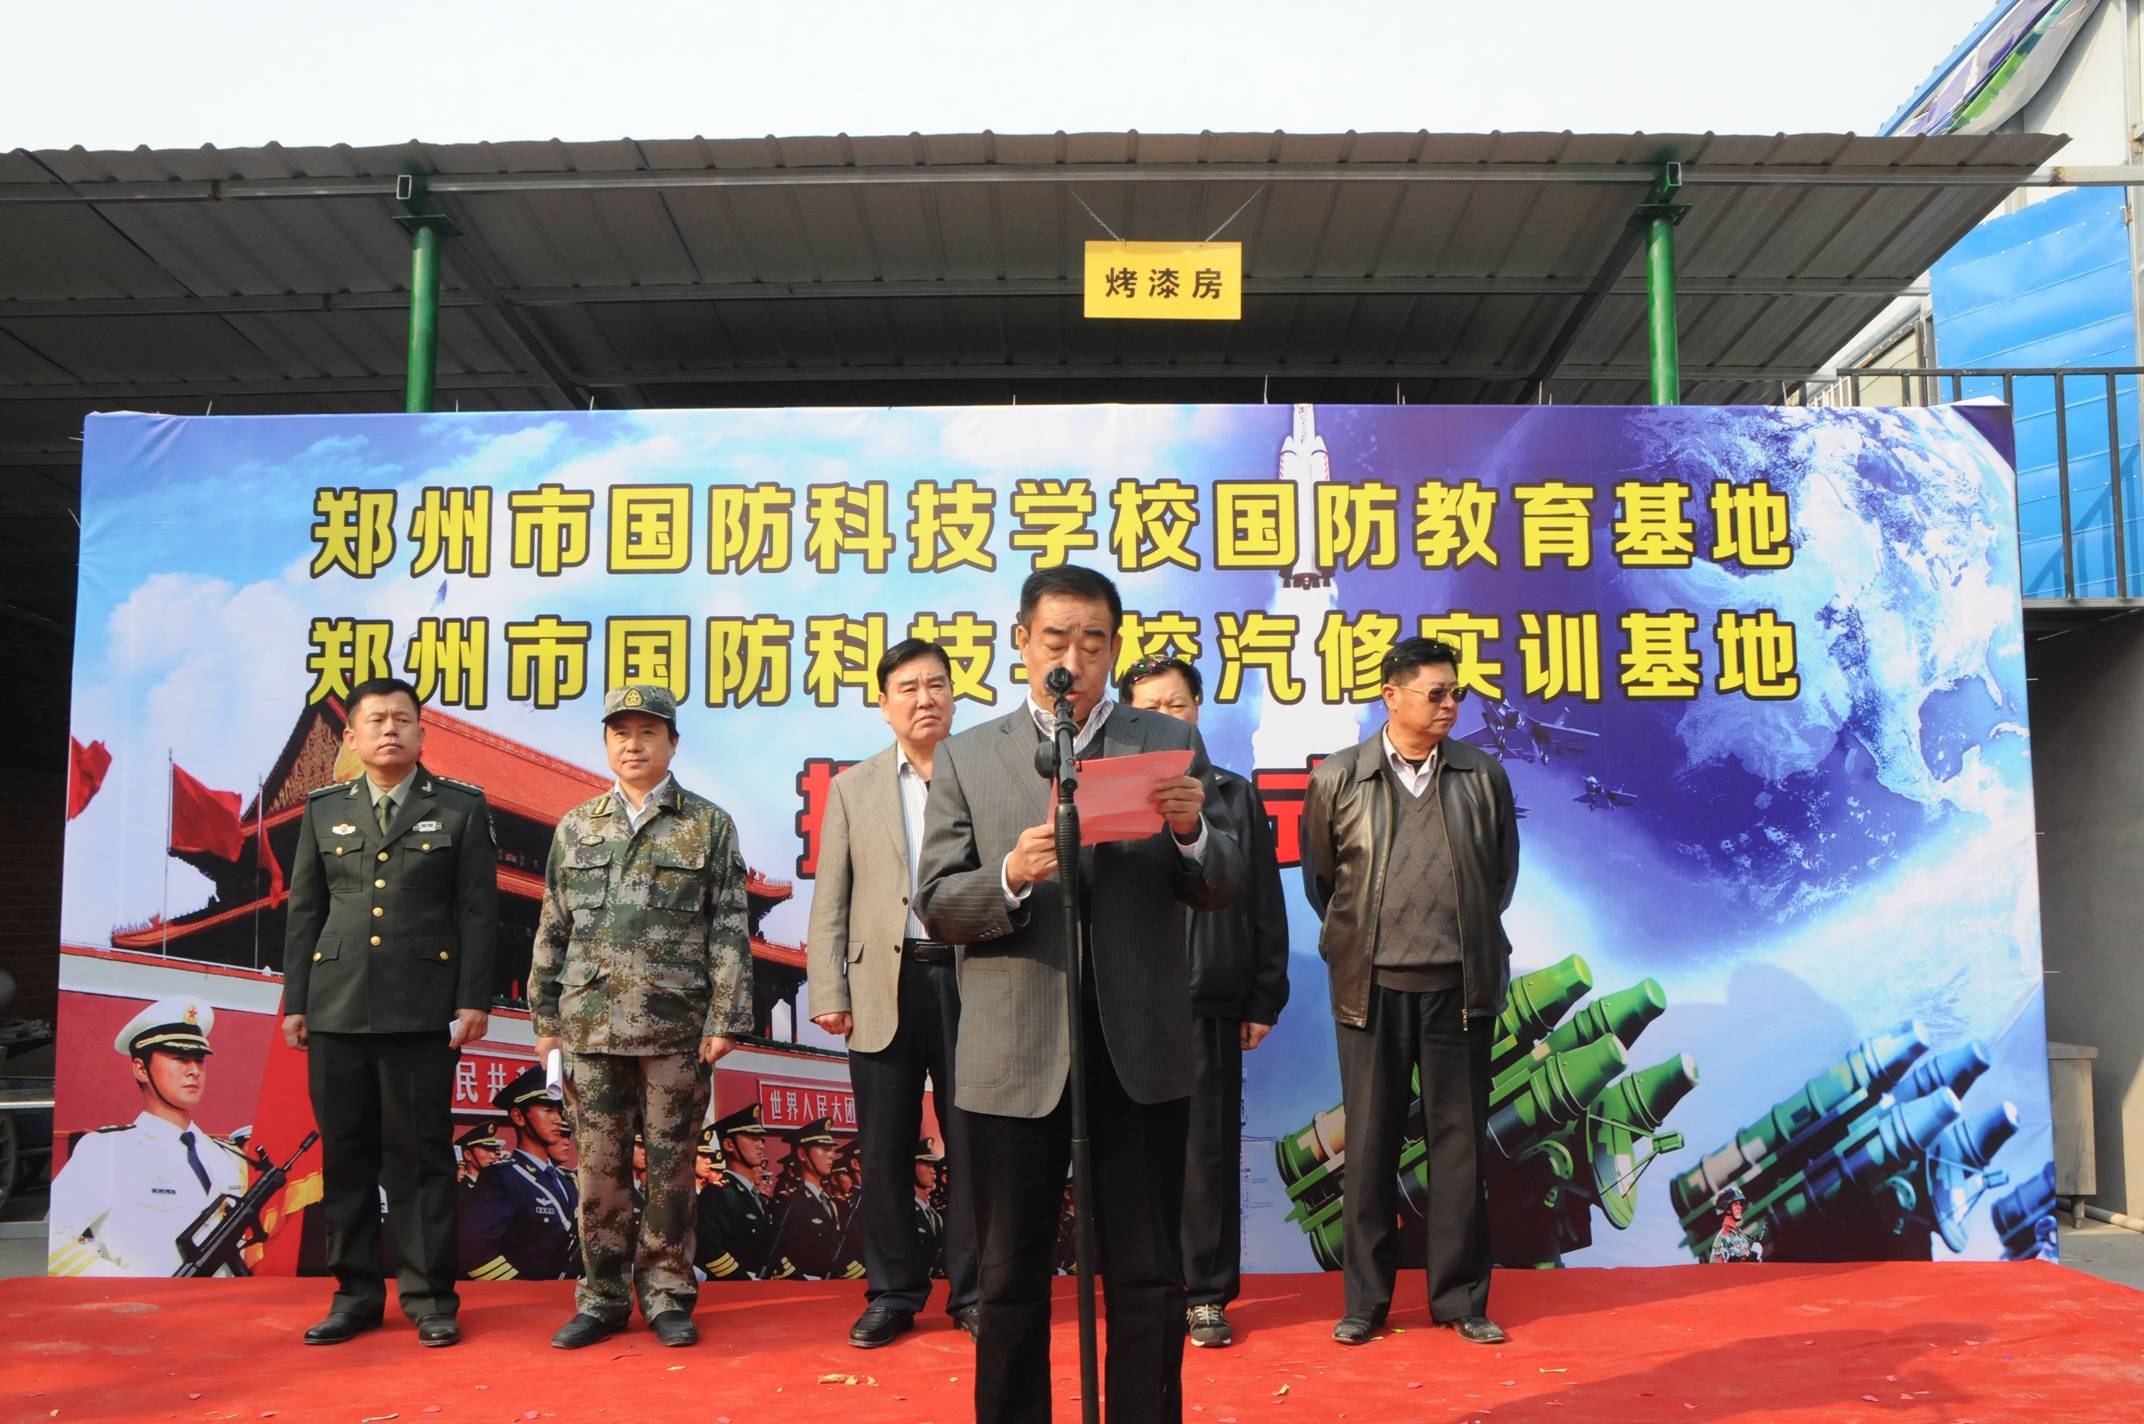 11月8日上午,在一阵阵隆隆的礼炮声中,郑州市国防科技学校汽修